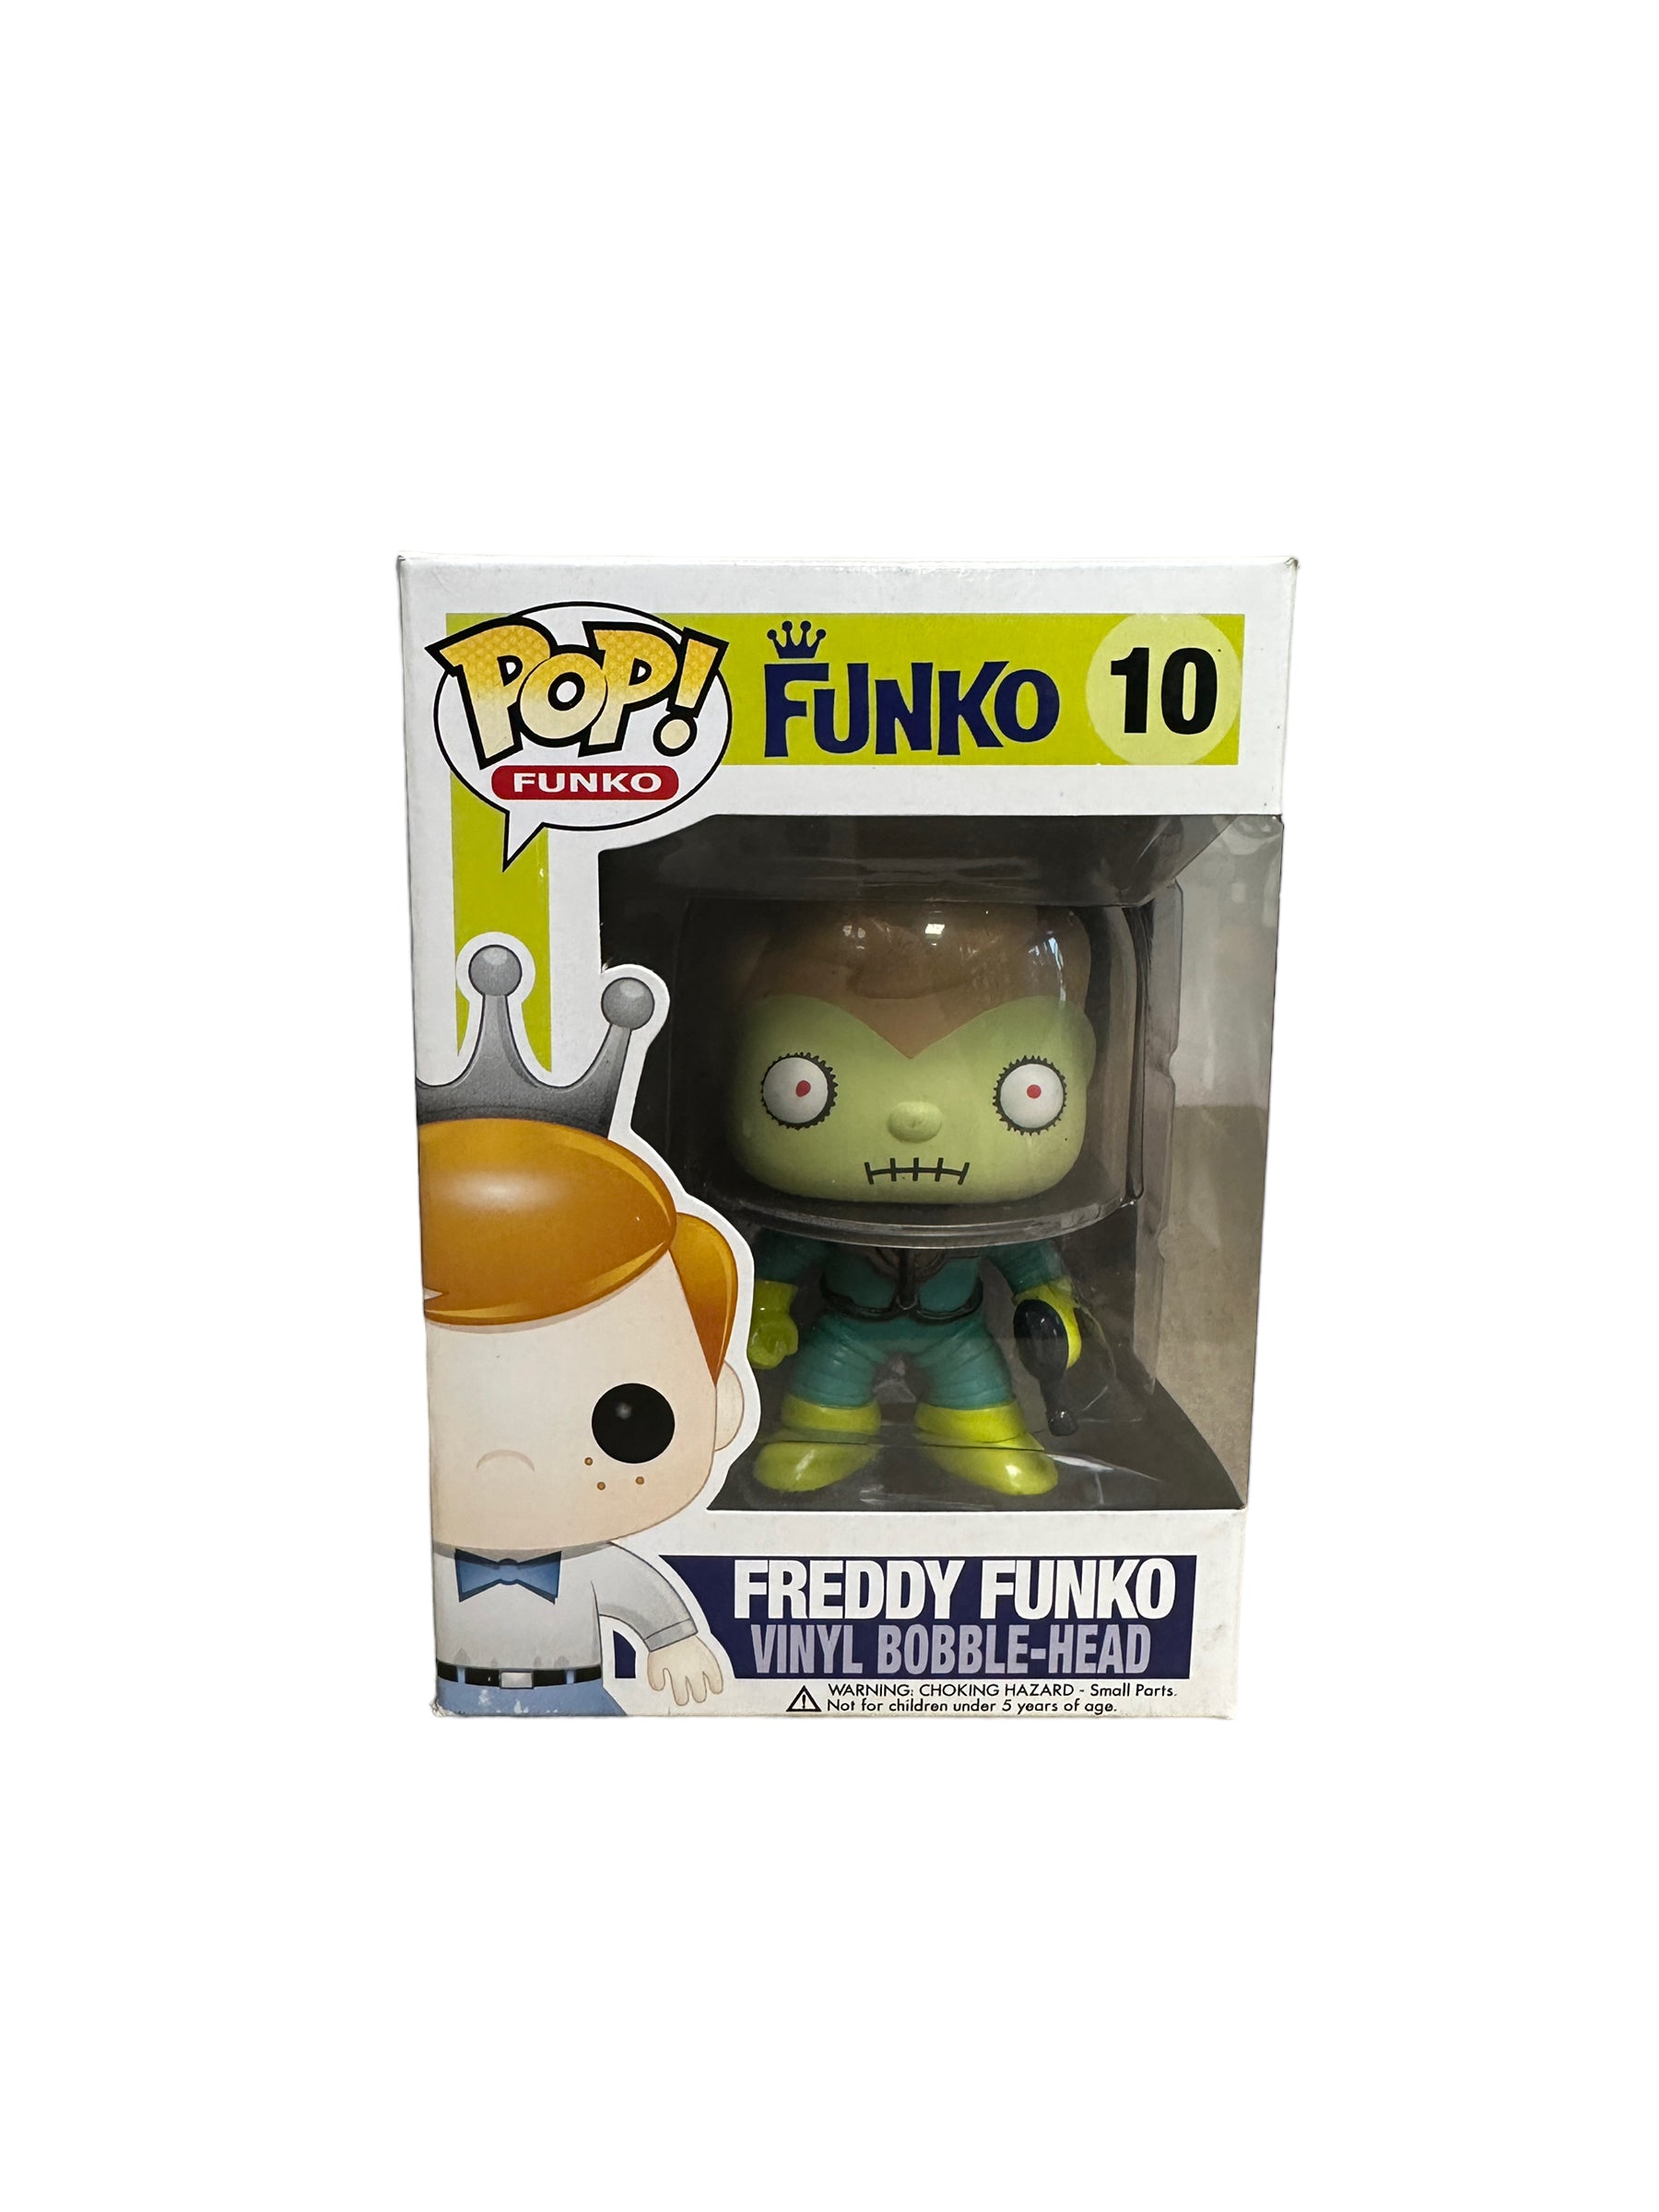 Freddy Funko as The Martian #10 Funko Pop! - SDCC 2012 Exclusive LE96 Pcs (No Sticker) - Condition 8.5/10